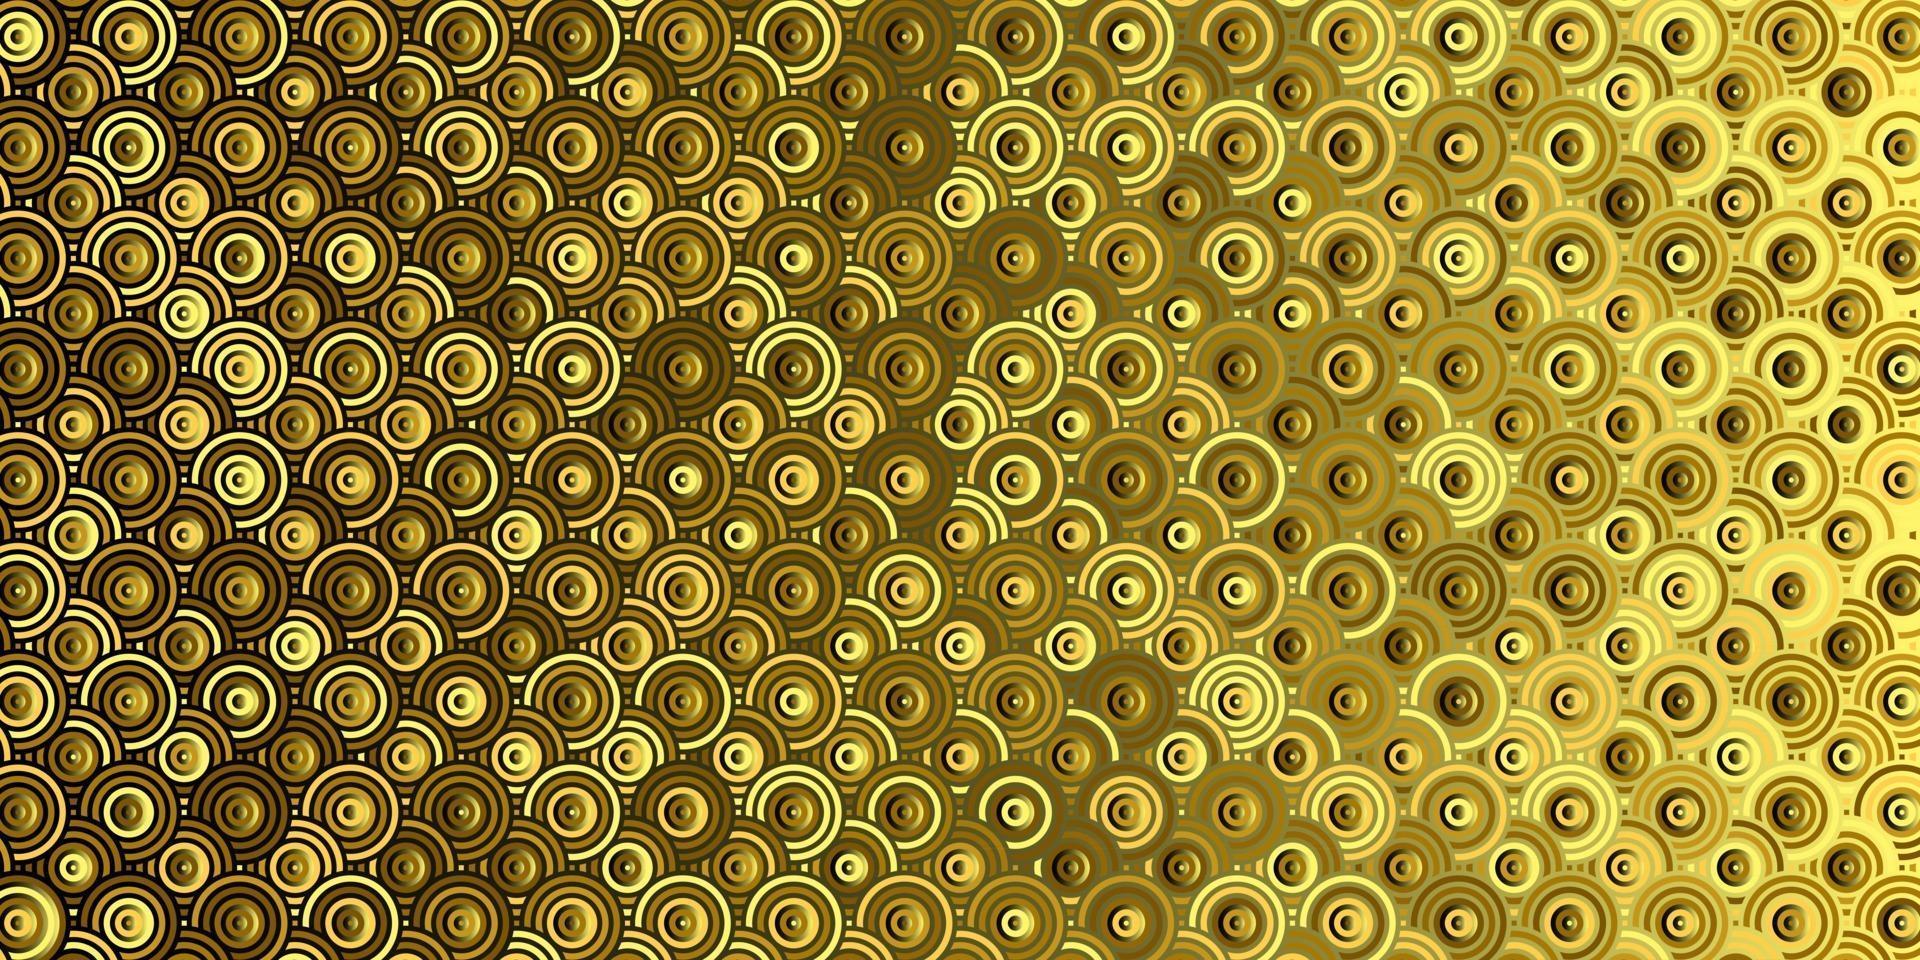 círculos de padrão geométrico abstrato sobrepostos ao fundo dourado tradicional vetor